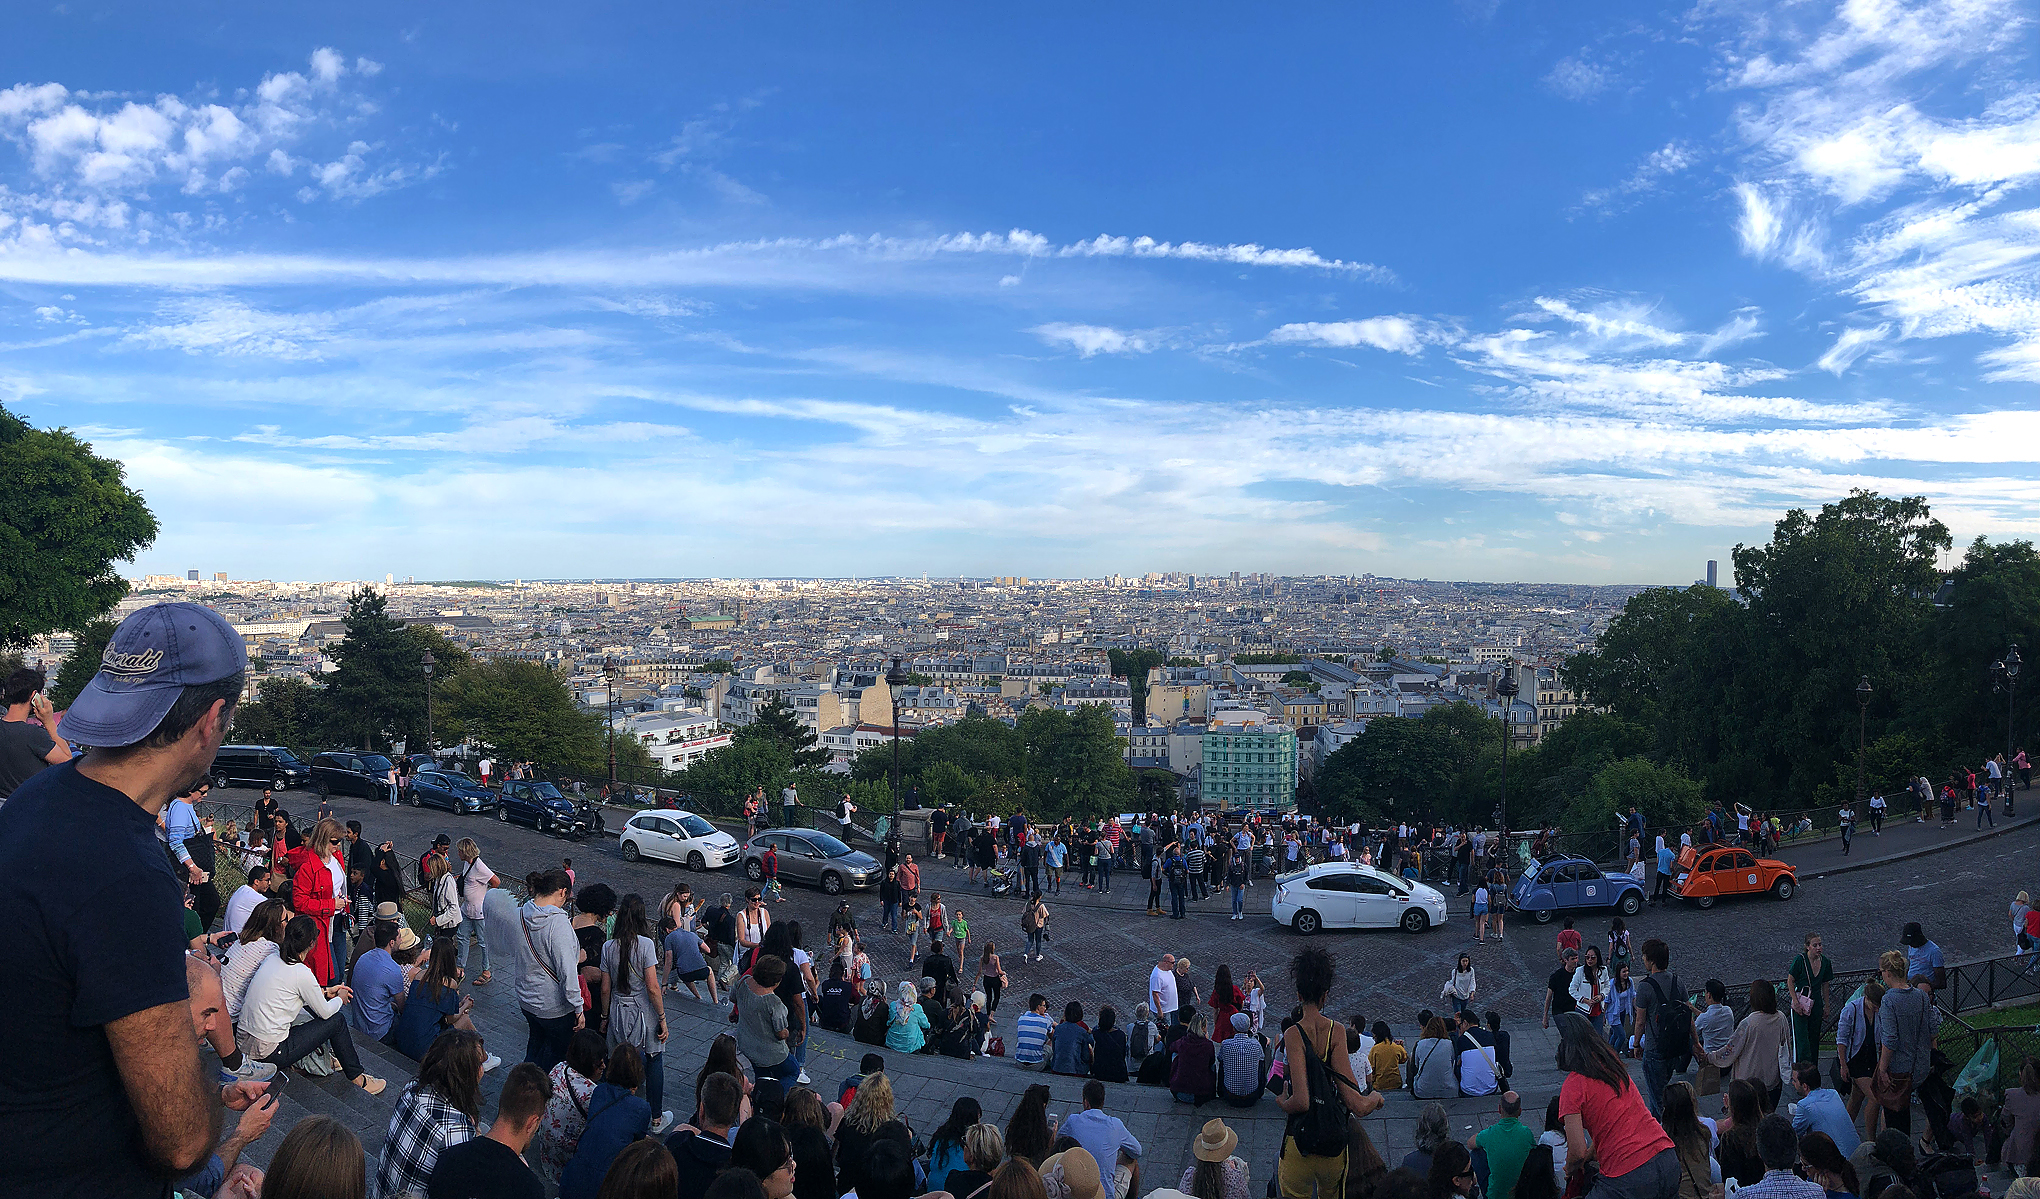 Sacré-Cœur de Montmartre